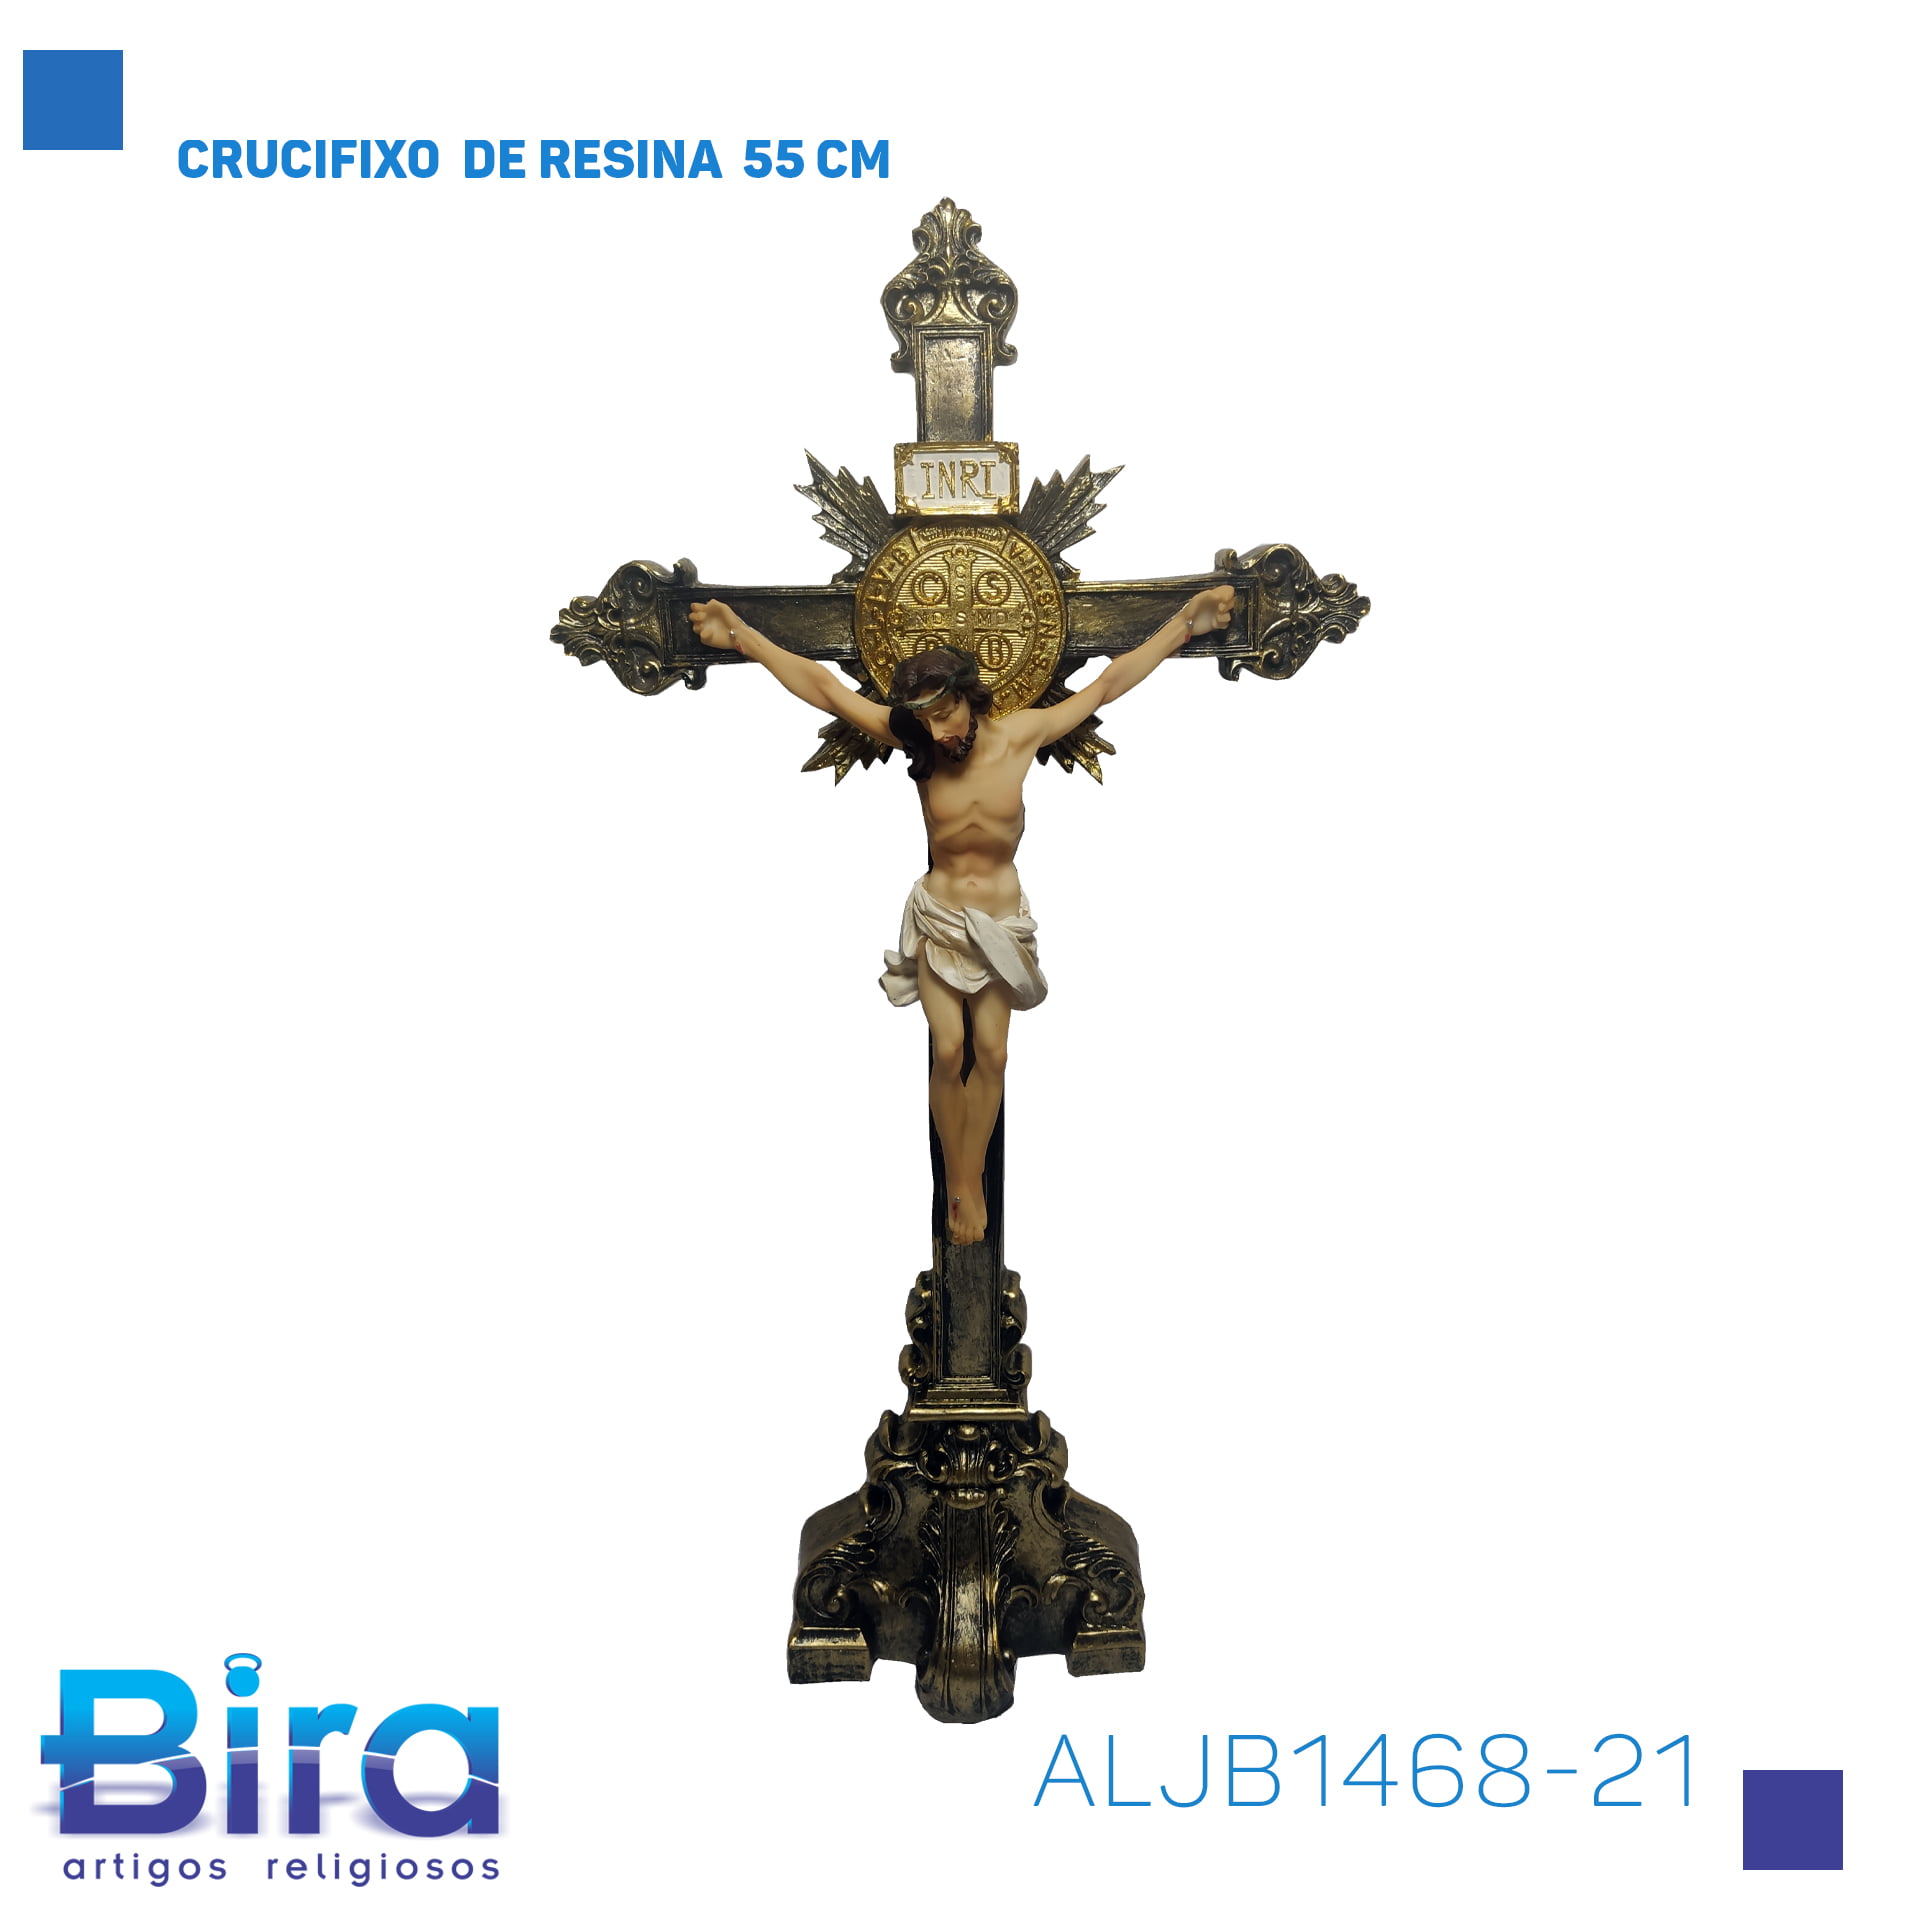 Bira Artigos Religiosos - CRUCIFIXO  DE RESINA  55 CM CÓD. ALJB1468-21